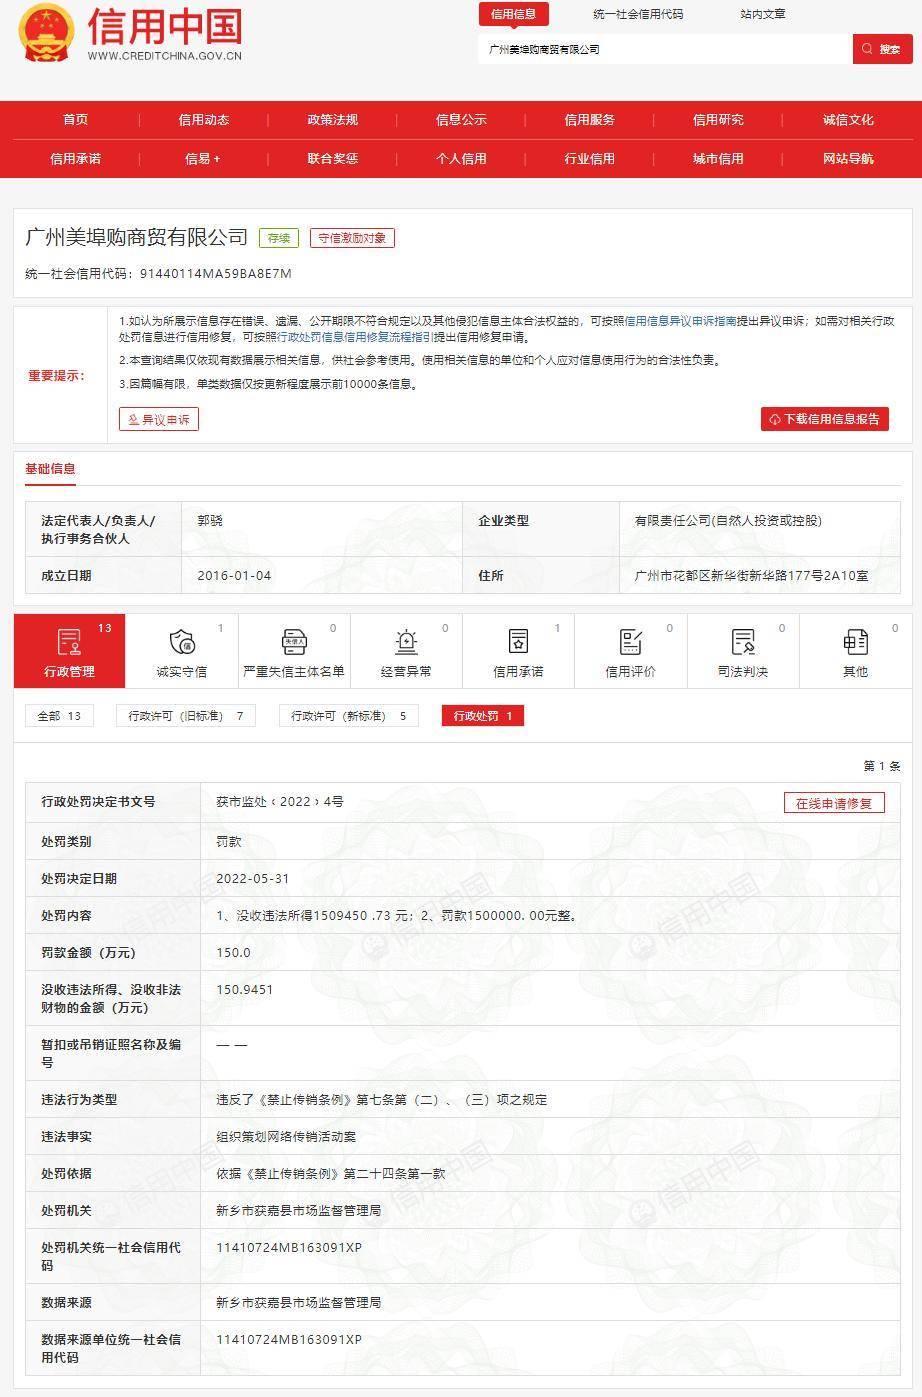 原创
            广州美埠购商贸有限公司因“组织策划网络传销”被罚没300余万元